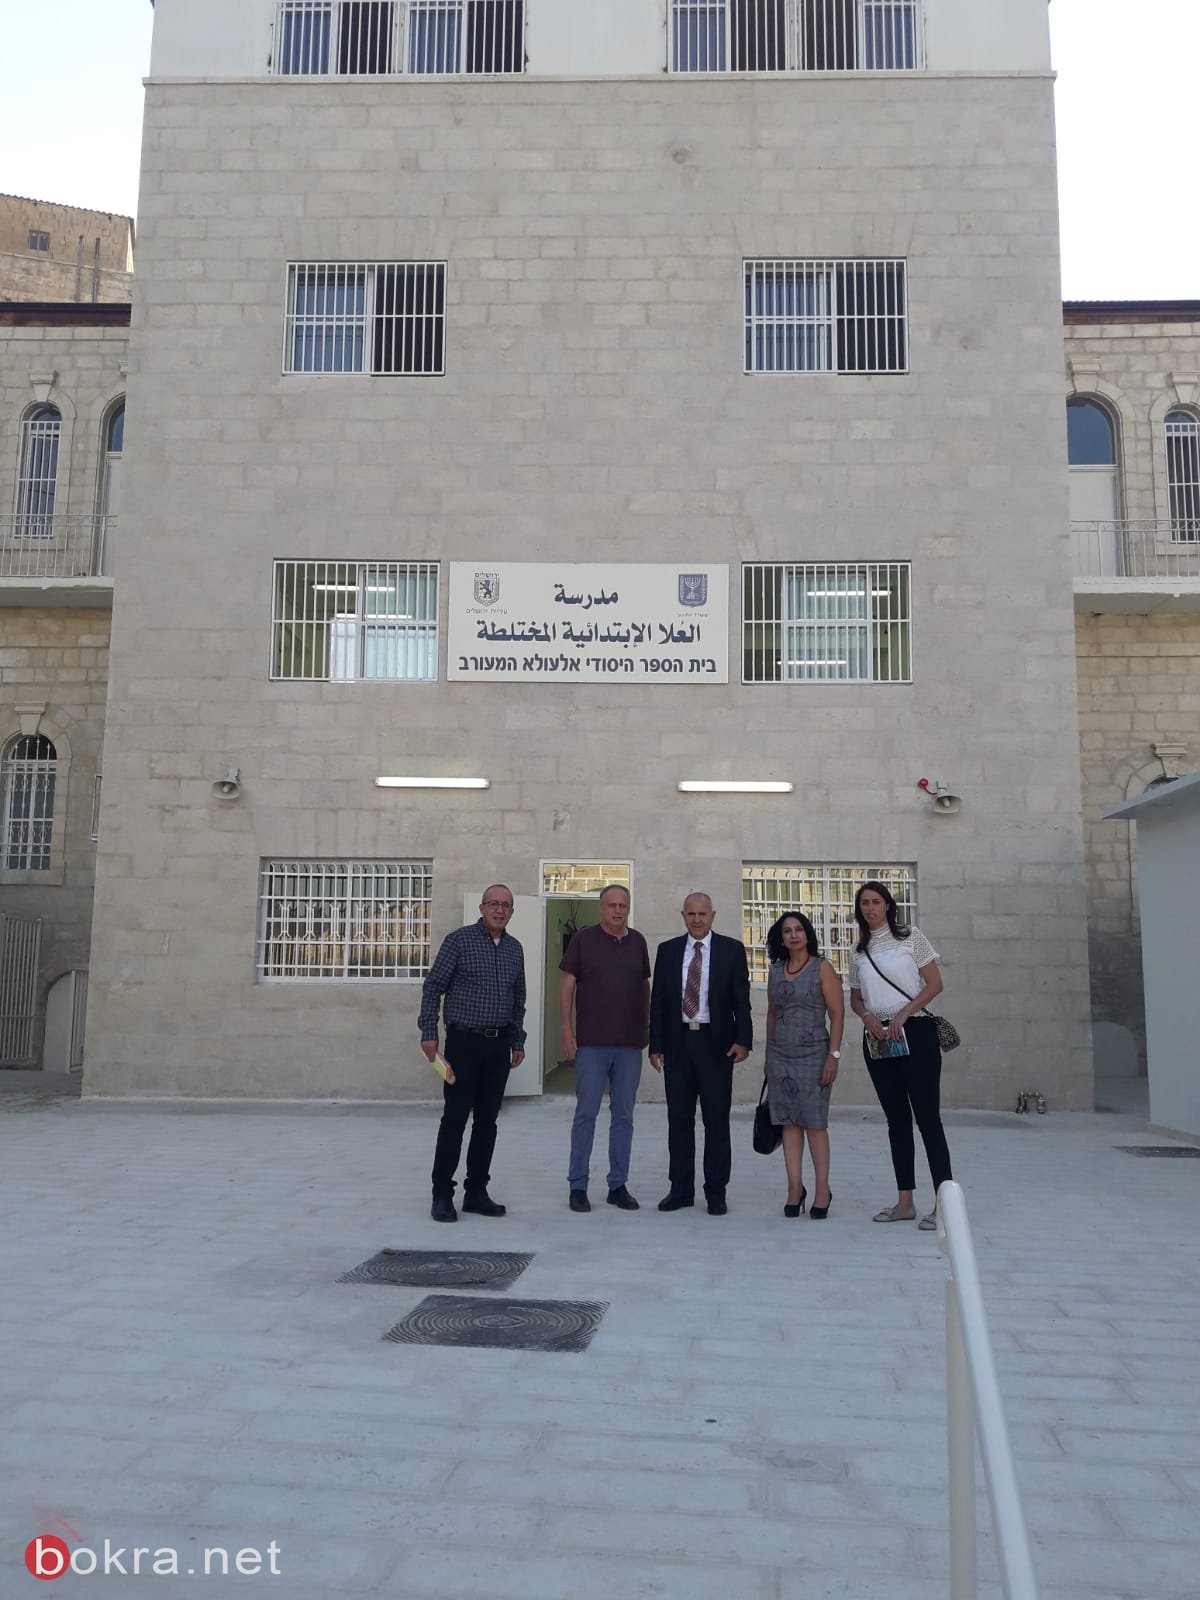 زيارة المدير العام للوزارة شموئيل ابواب لجهاز التّعليم في شرقي اورشليم القدس -13